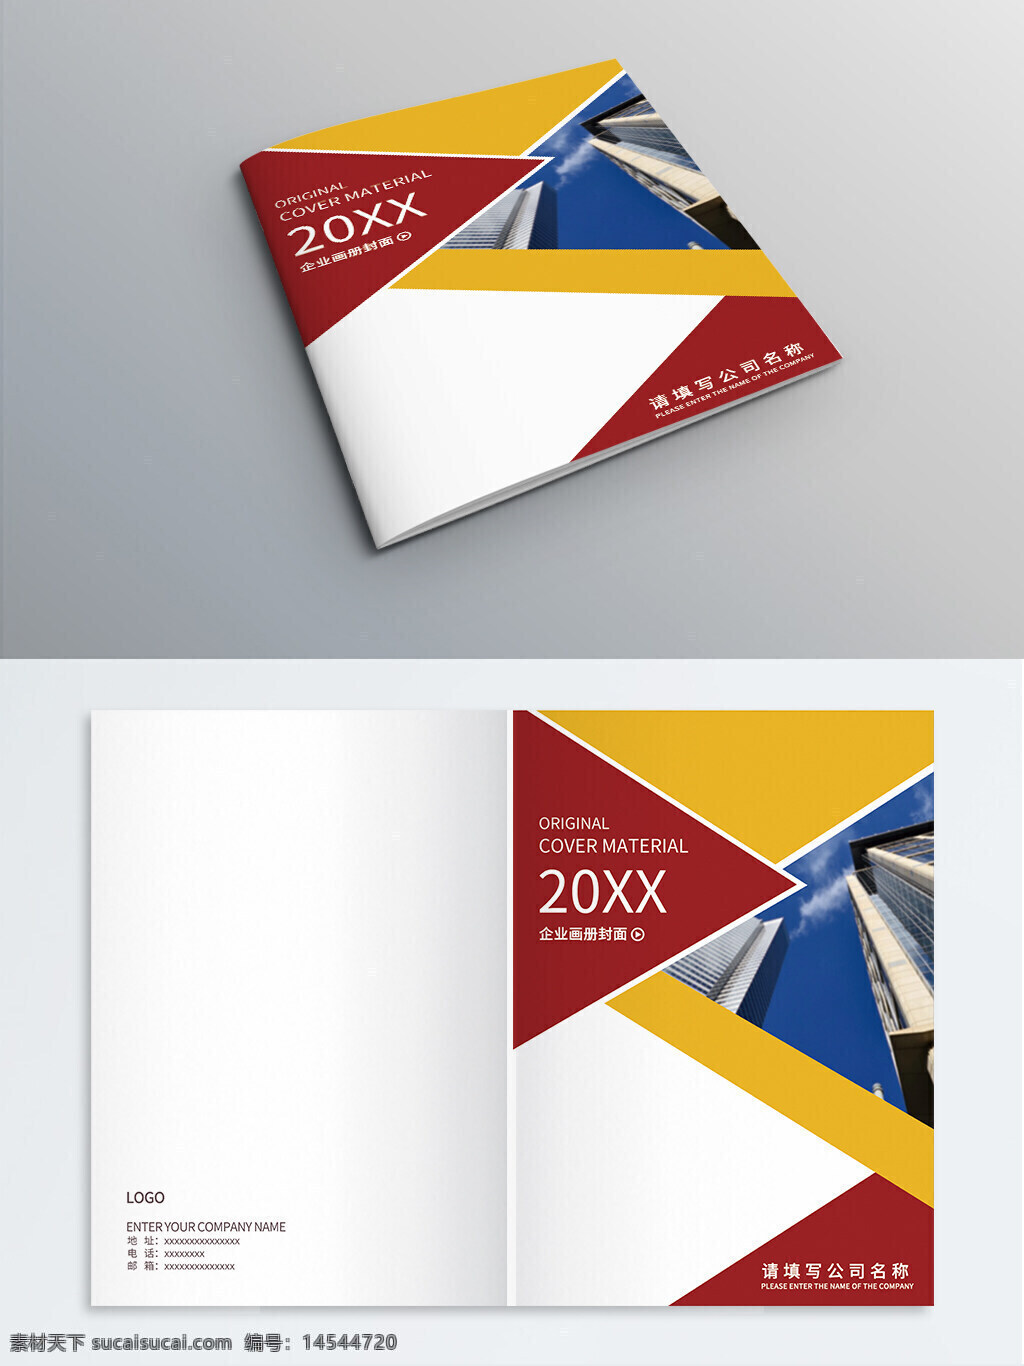 企业画册 公司画册 商务画册 画册封面 封面设计 封面模板 书籍装帧